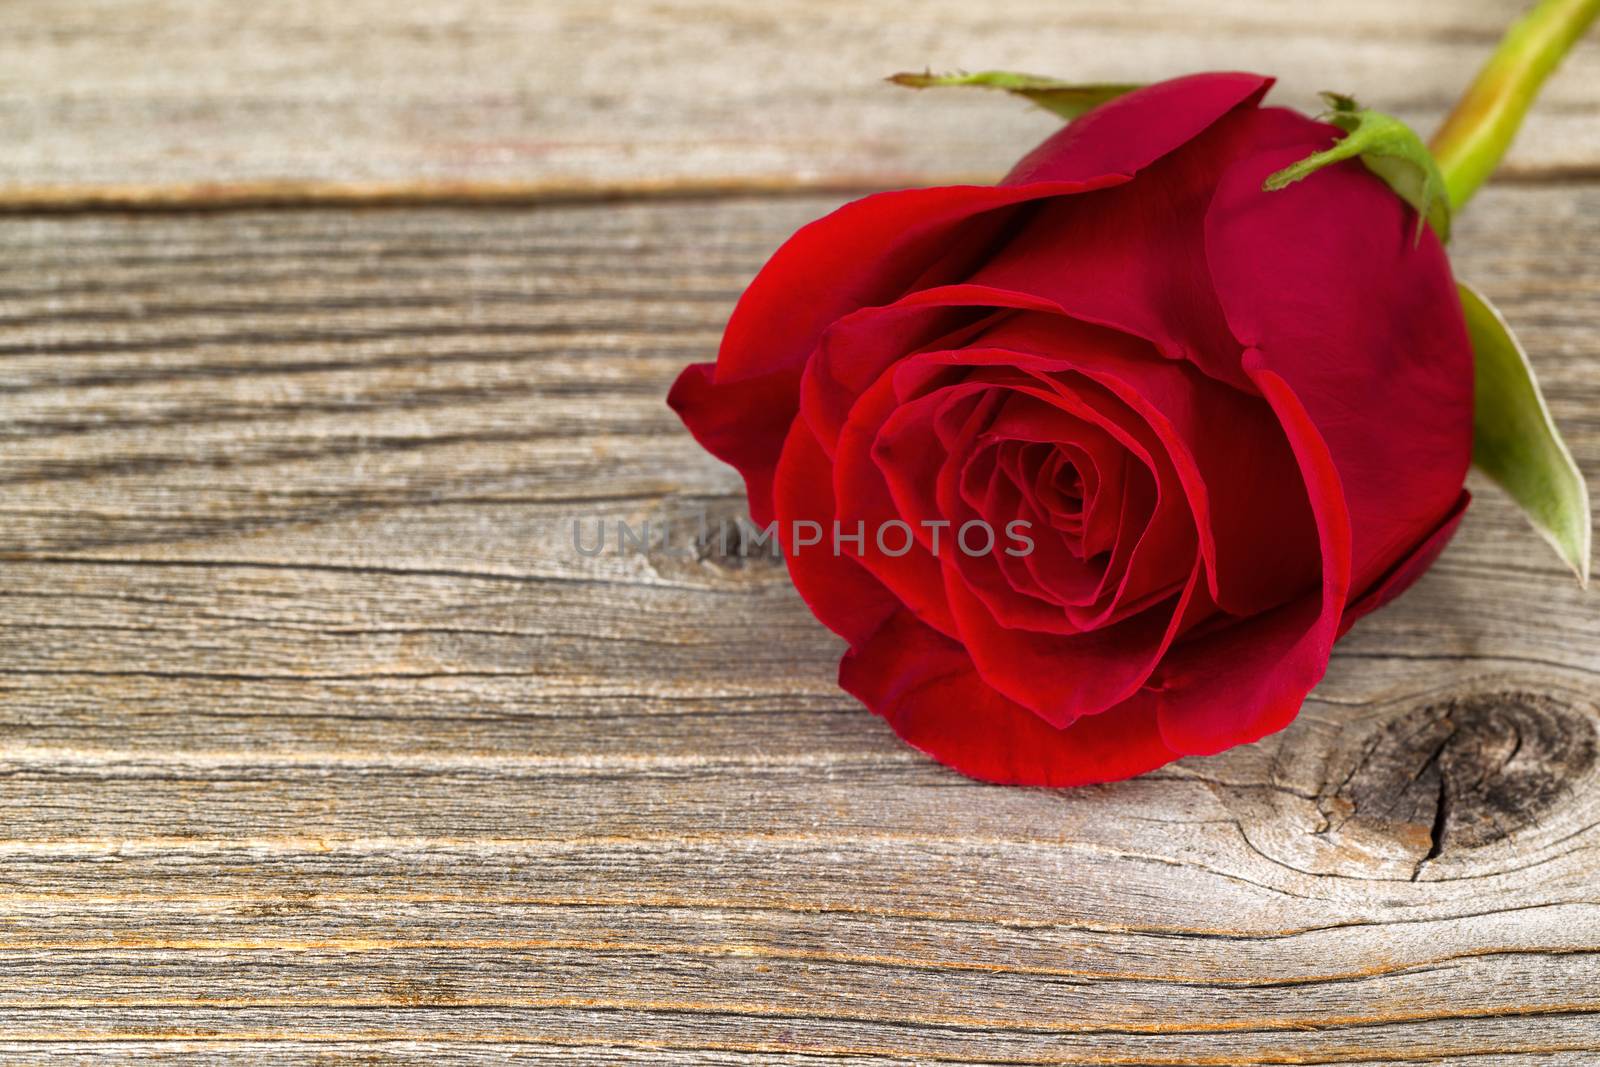 Single freshly cut red rose on rustic wood  by tab1962